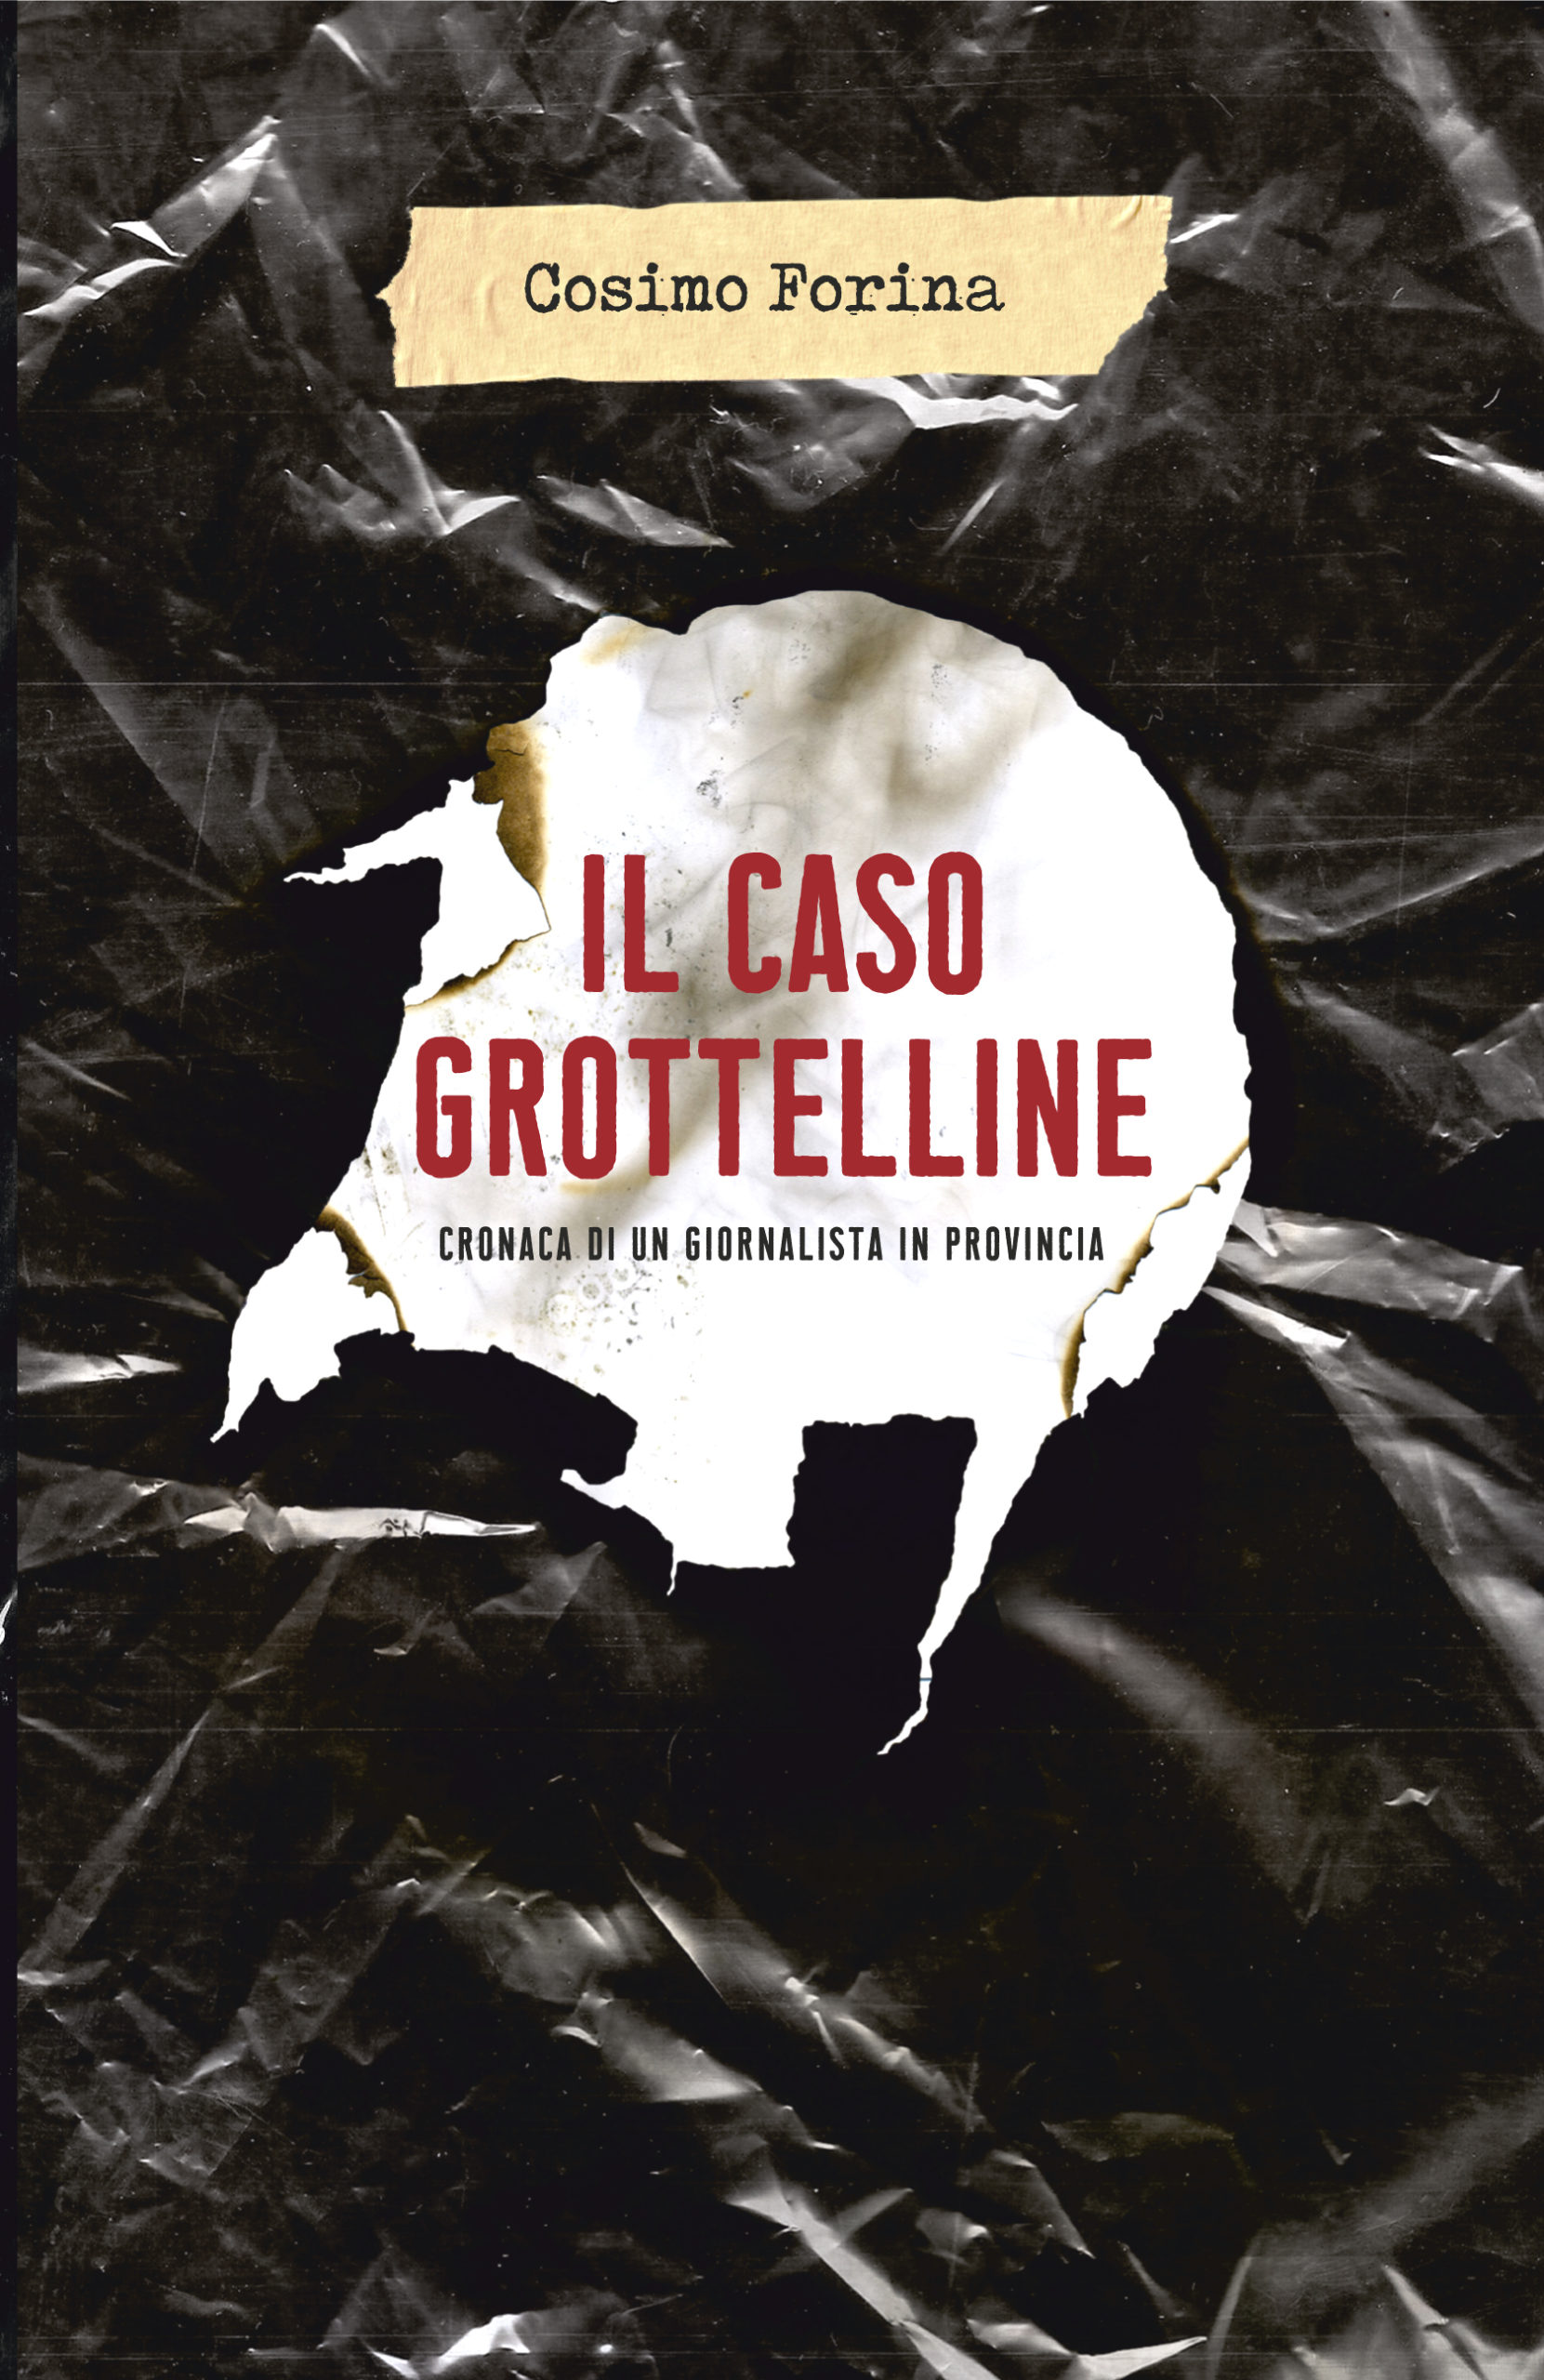 Sabato 2 ottobre alle ore 19,30 presso la Fondazione Sassi incontro con Cosimo Forina, autore de: “Il caso Grottelline. Cronaca di un giornalista in provincia”